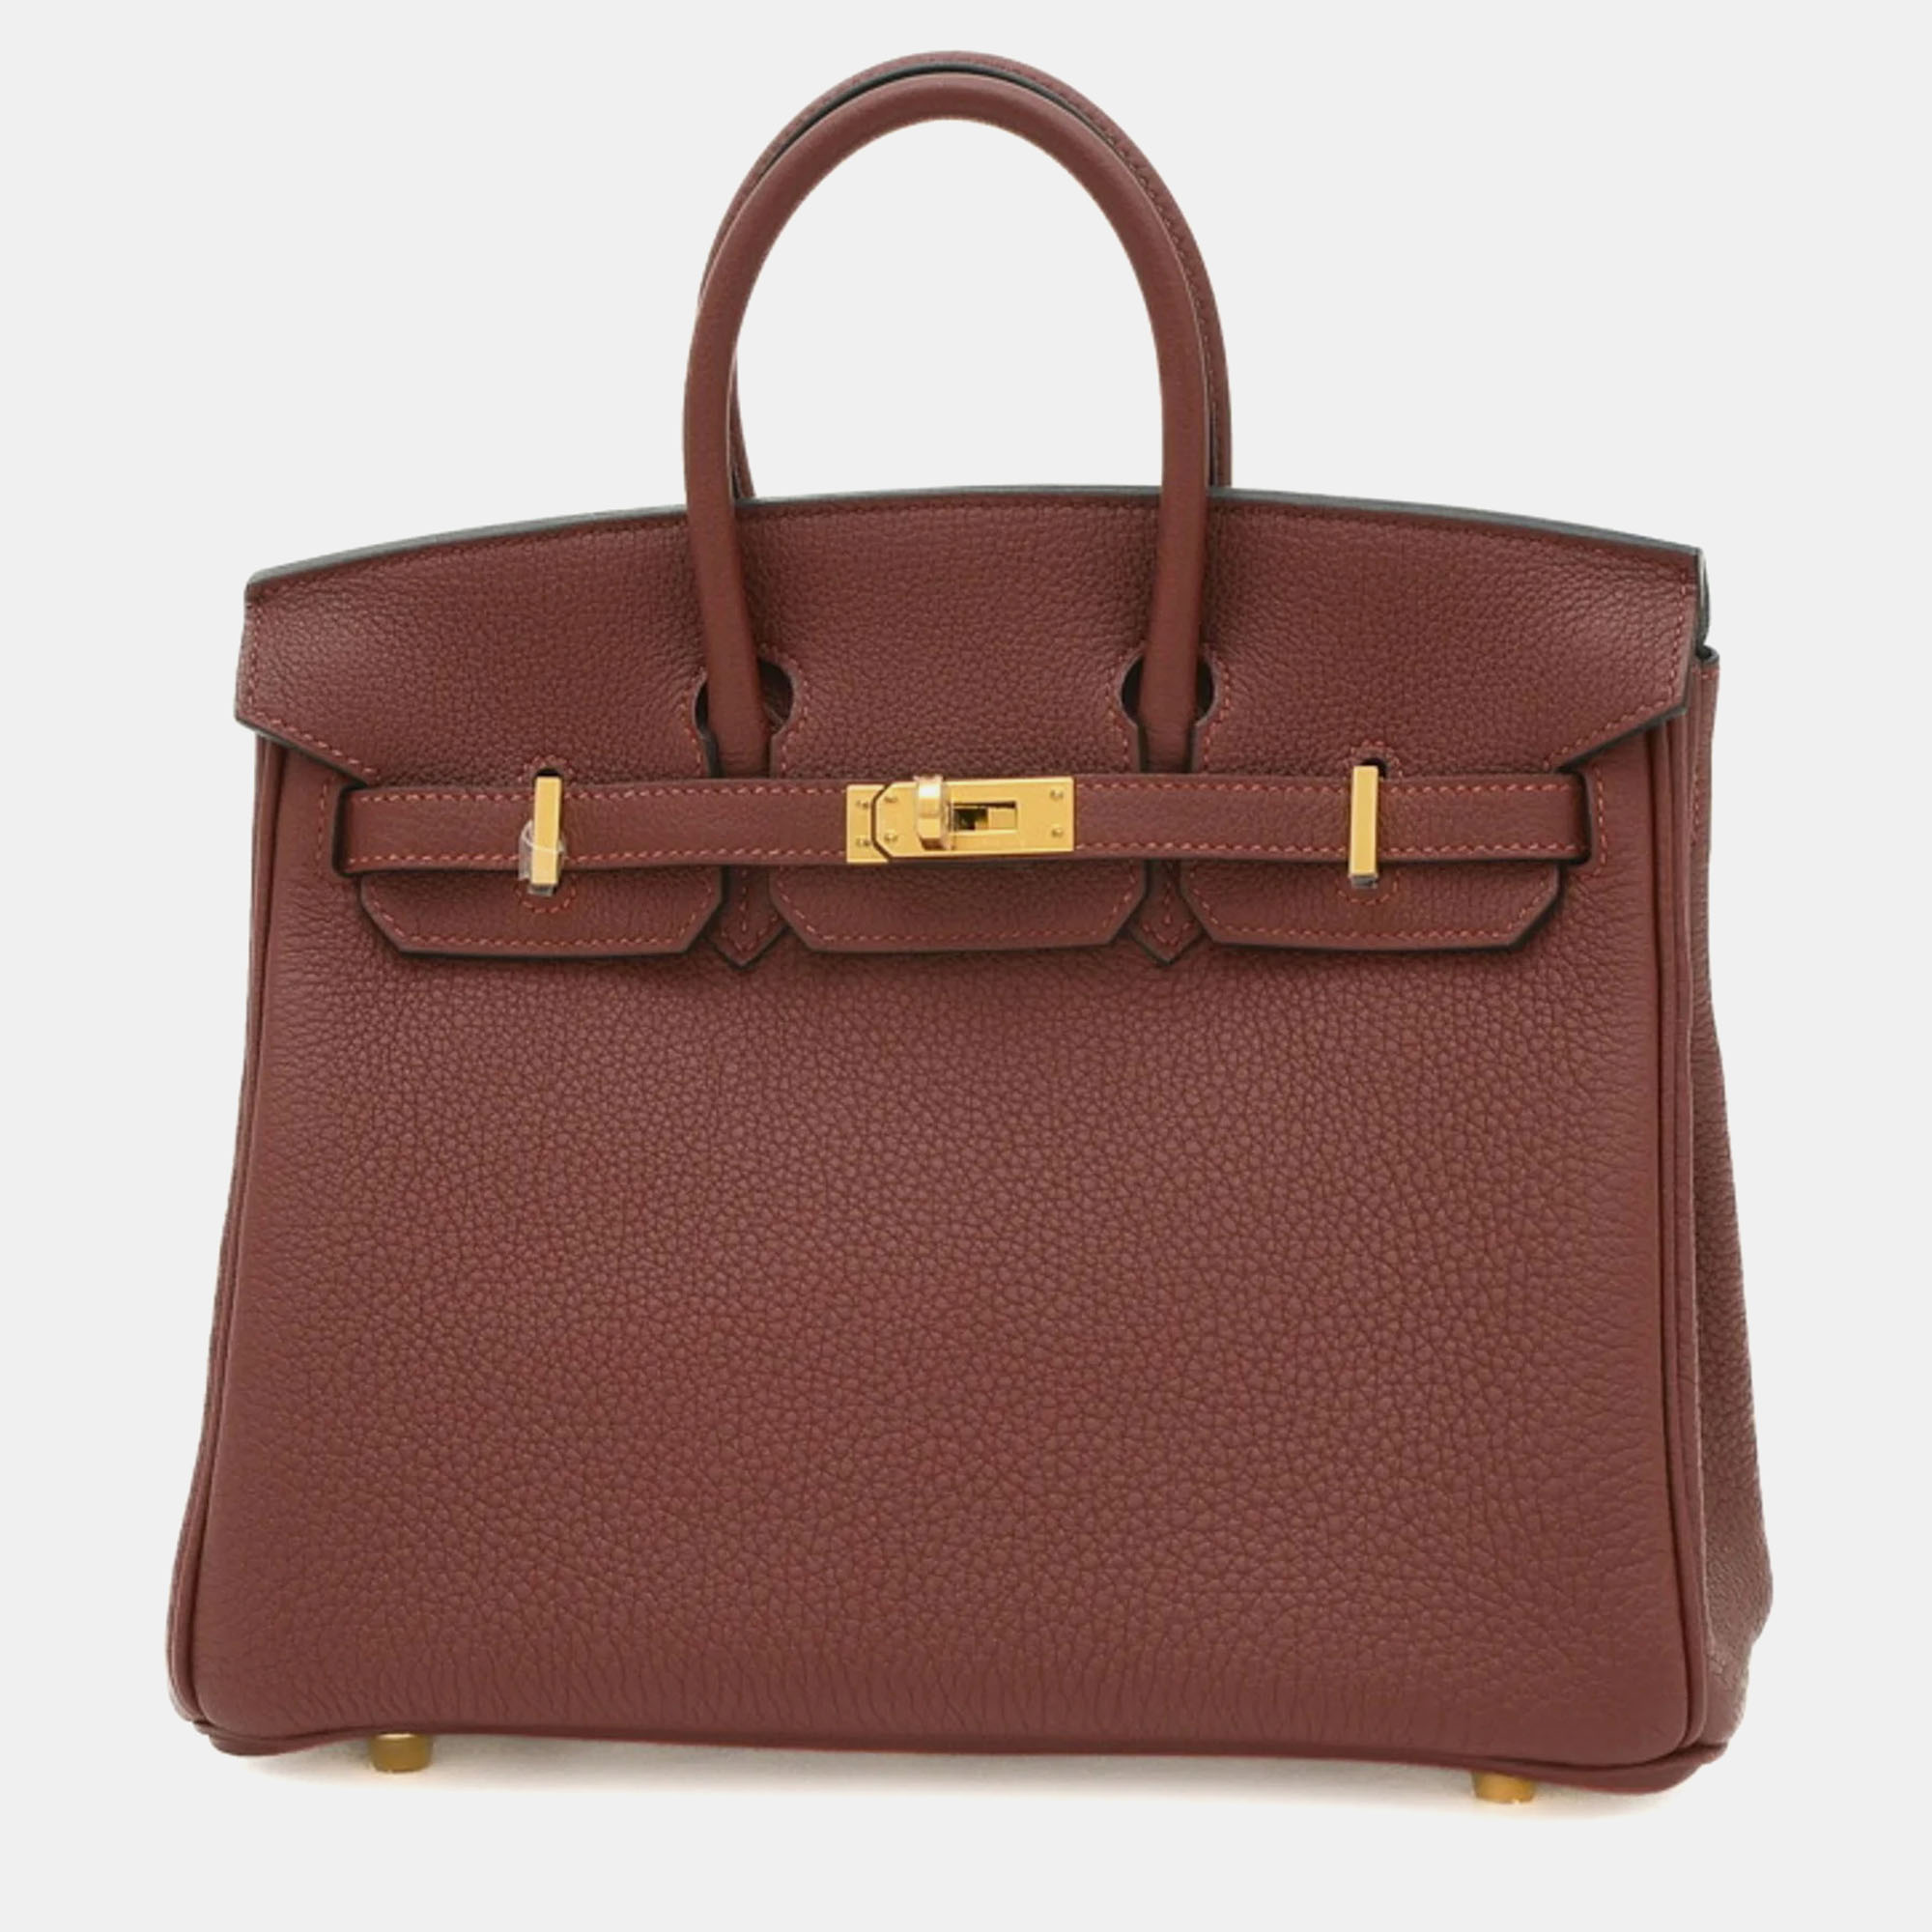 Hermes rouge ash togo birkin 25 handbag